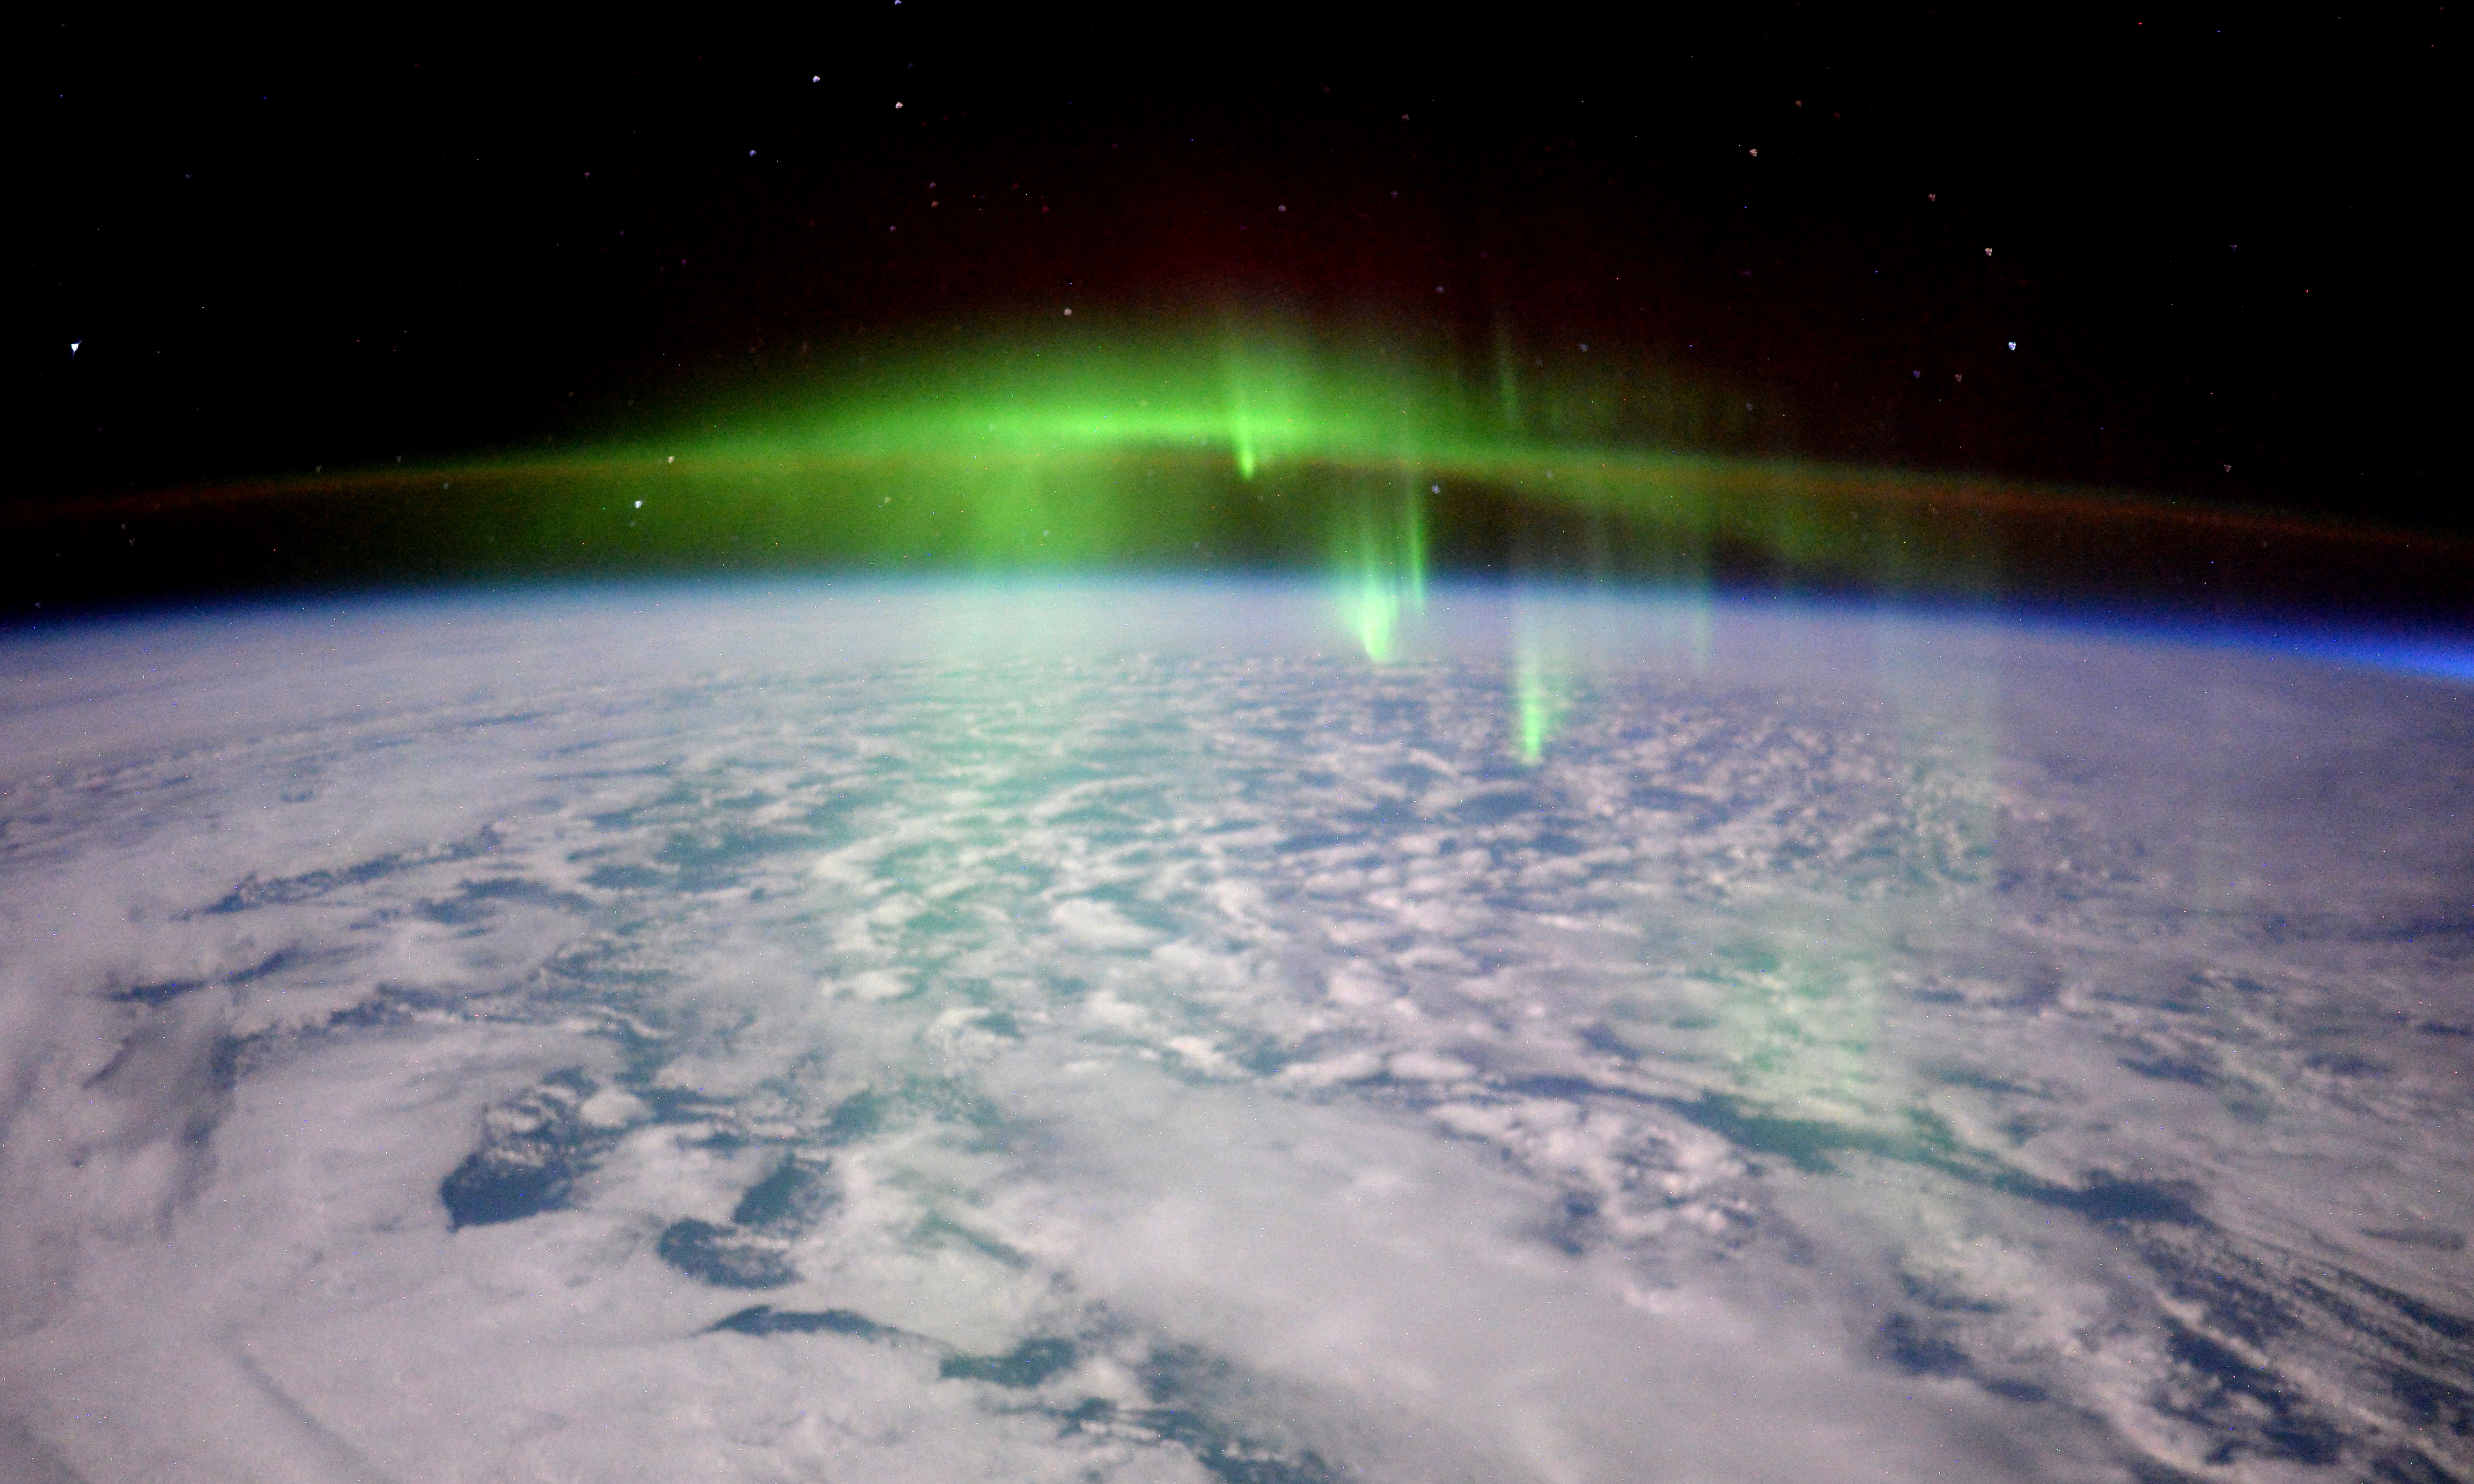 O astronauta Tim Peake da Agência Espacial Européia tirou uma foto da aurora boreal na Terra vista da estação espacial